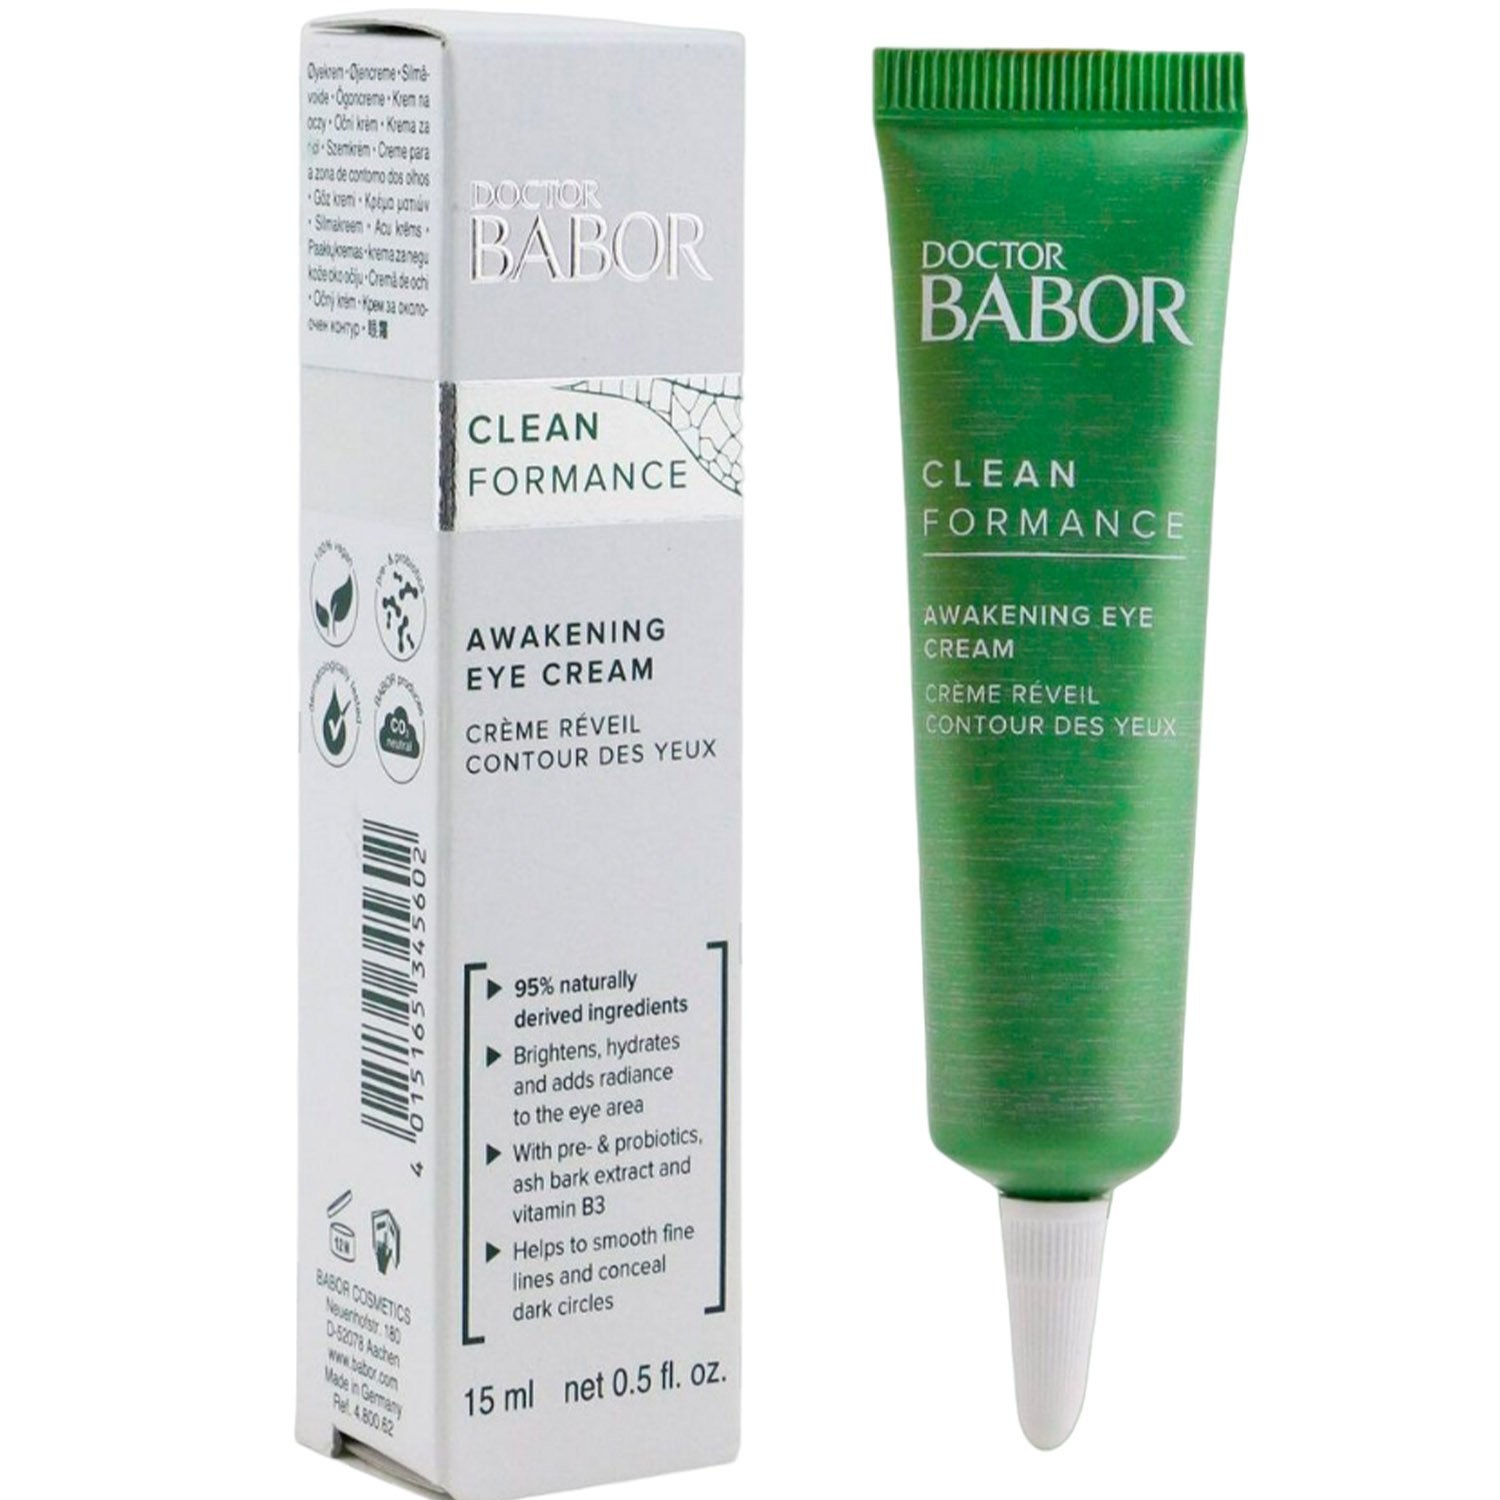 Утренний крем для век Babor Doctor Babor Clean Formance Awakening Eye Cream против отечности, 15 мл - фото 1